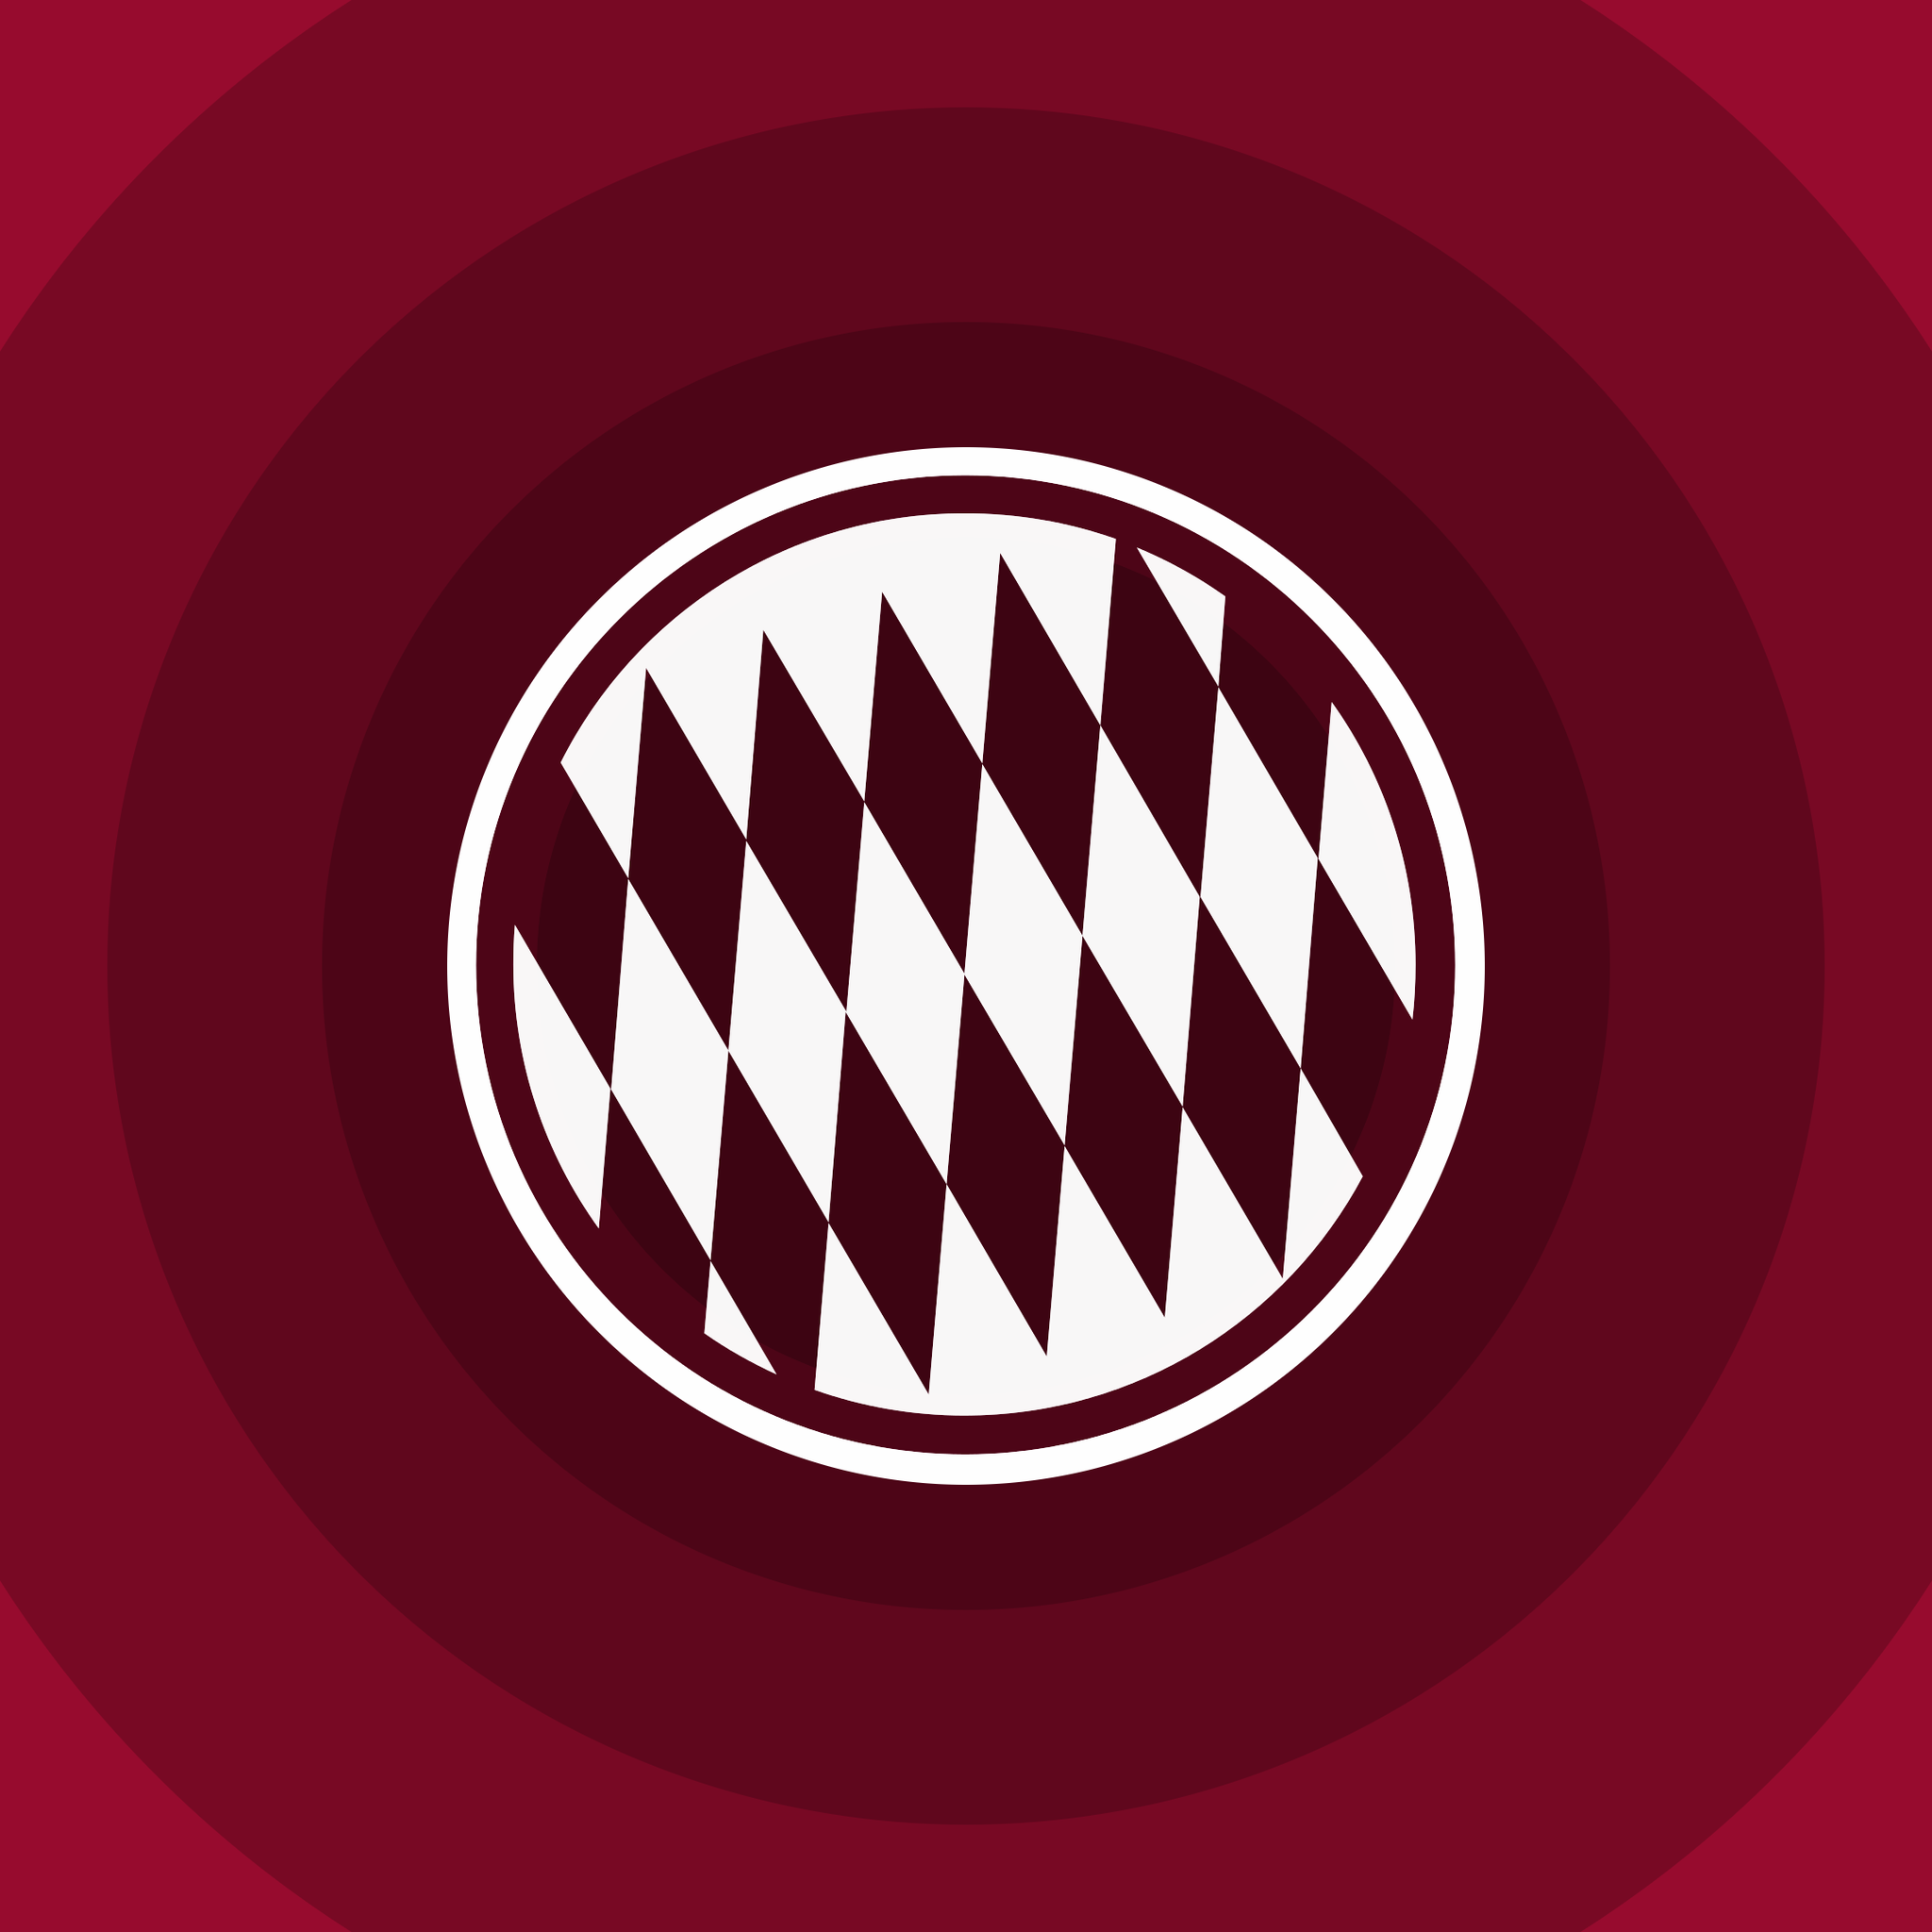 FC Bayern Munich Minimal Logo for 2048 x 2048 New iPad resolution